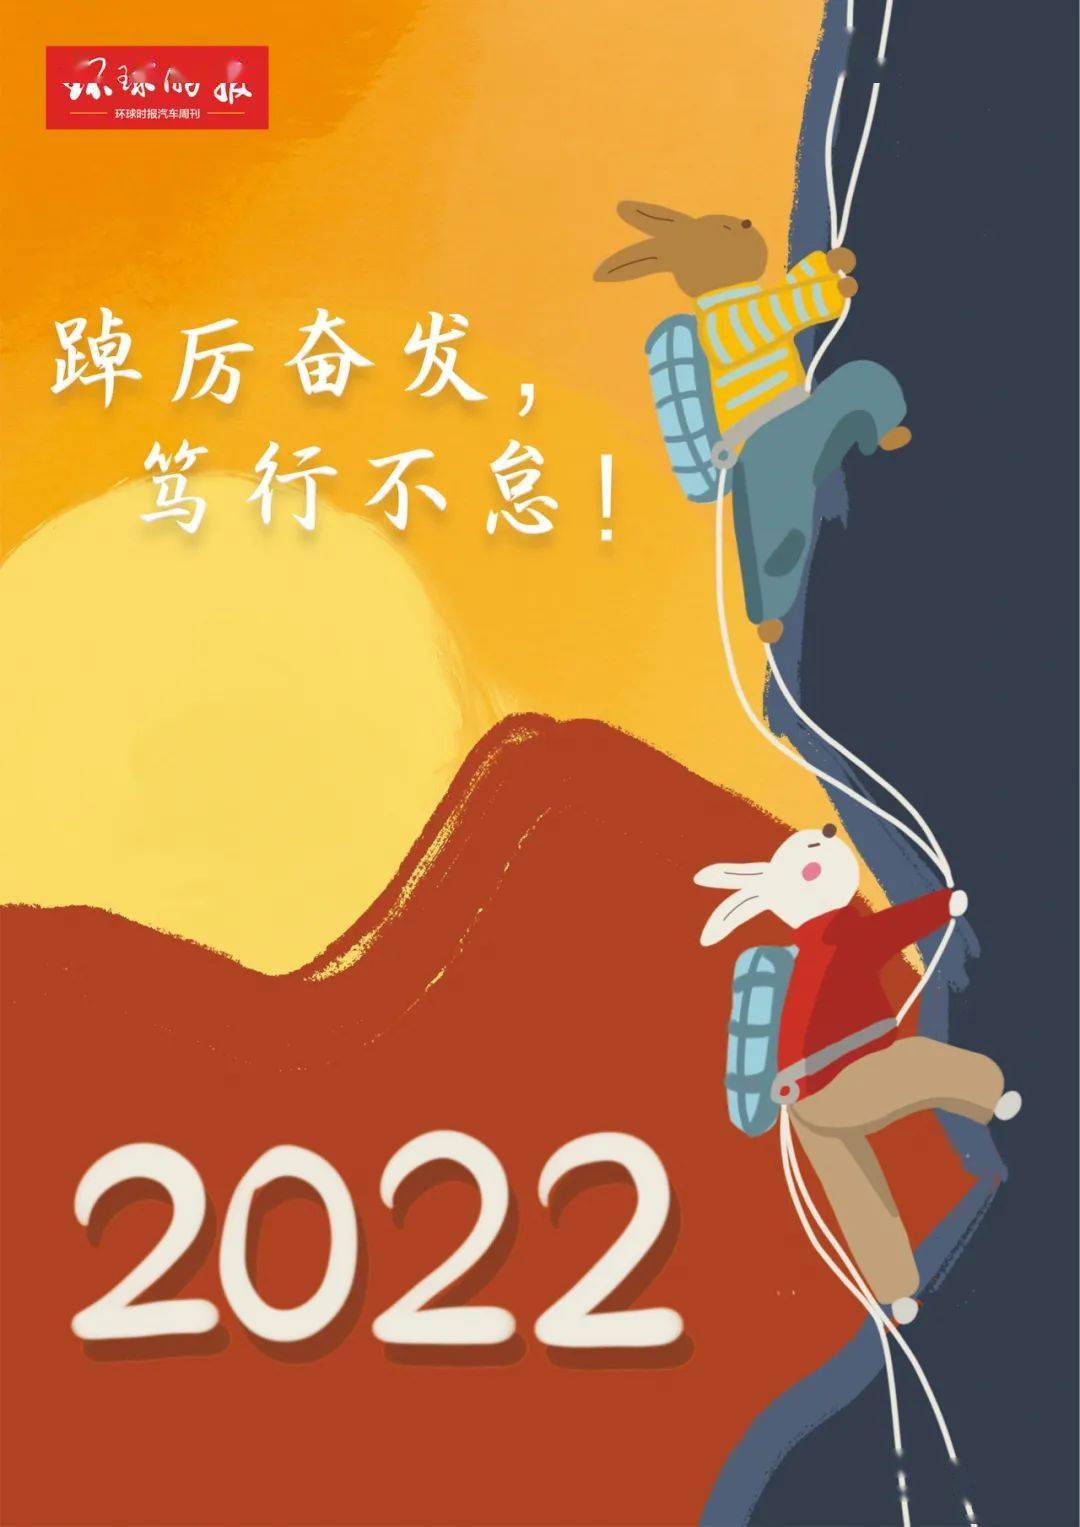 2022年 踔厉奋发,笃行不怠_搜狐汽车_搜狐网